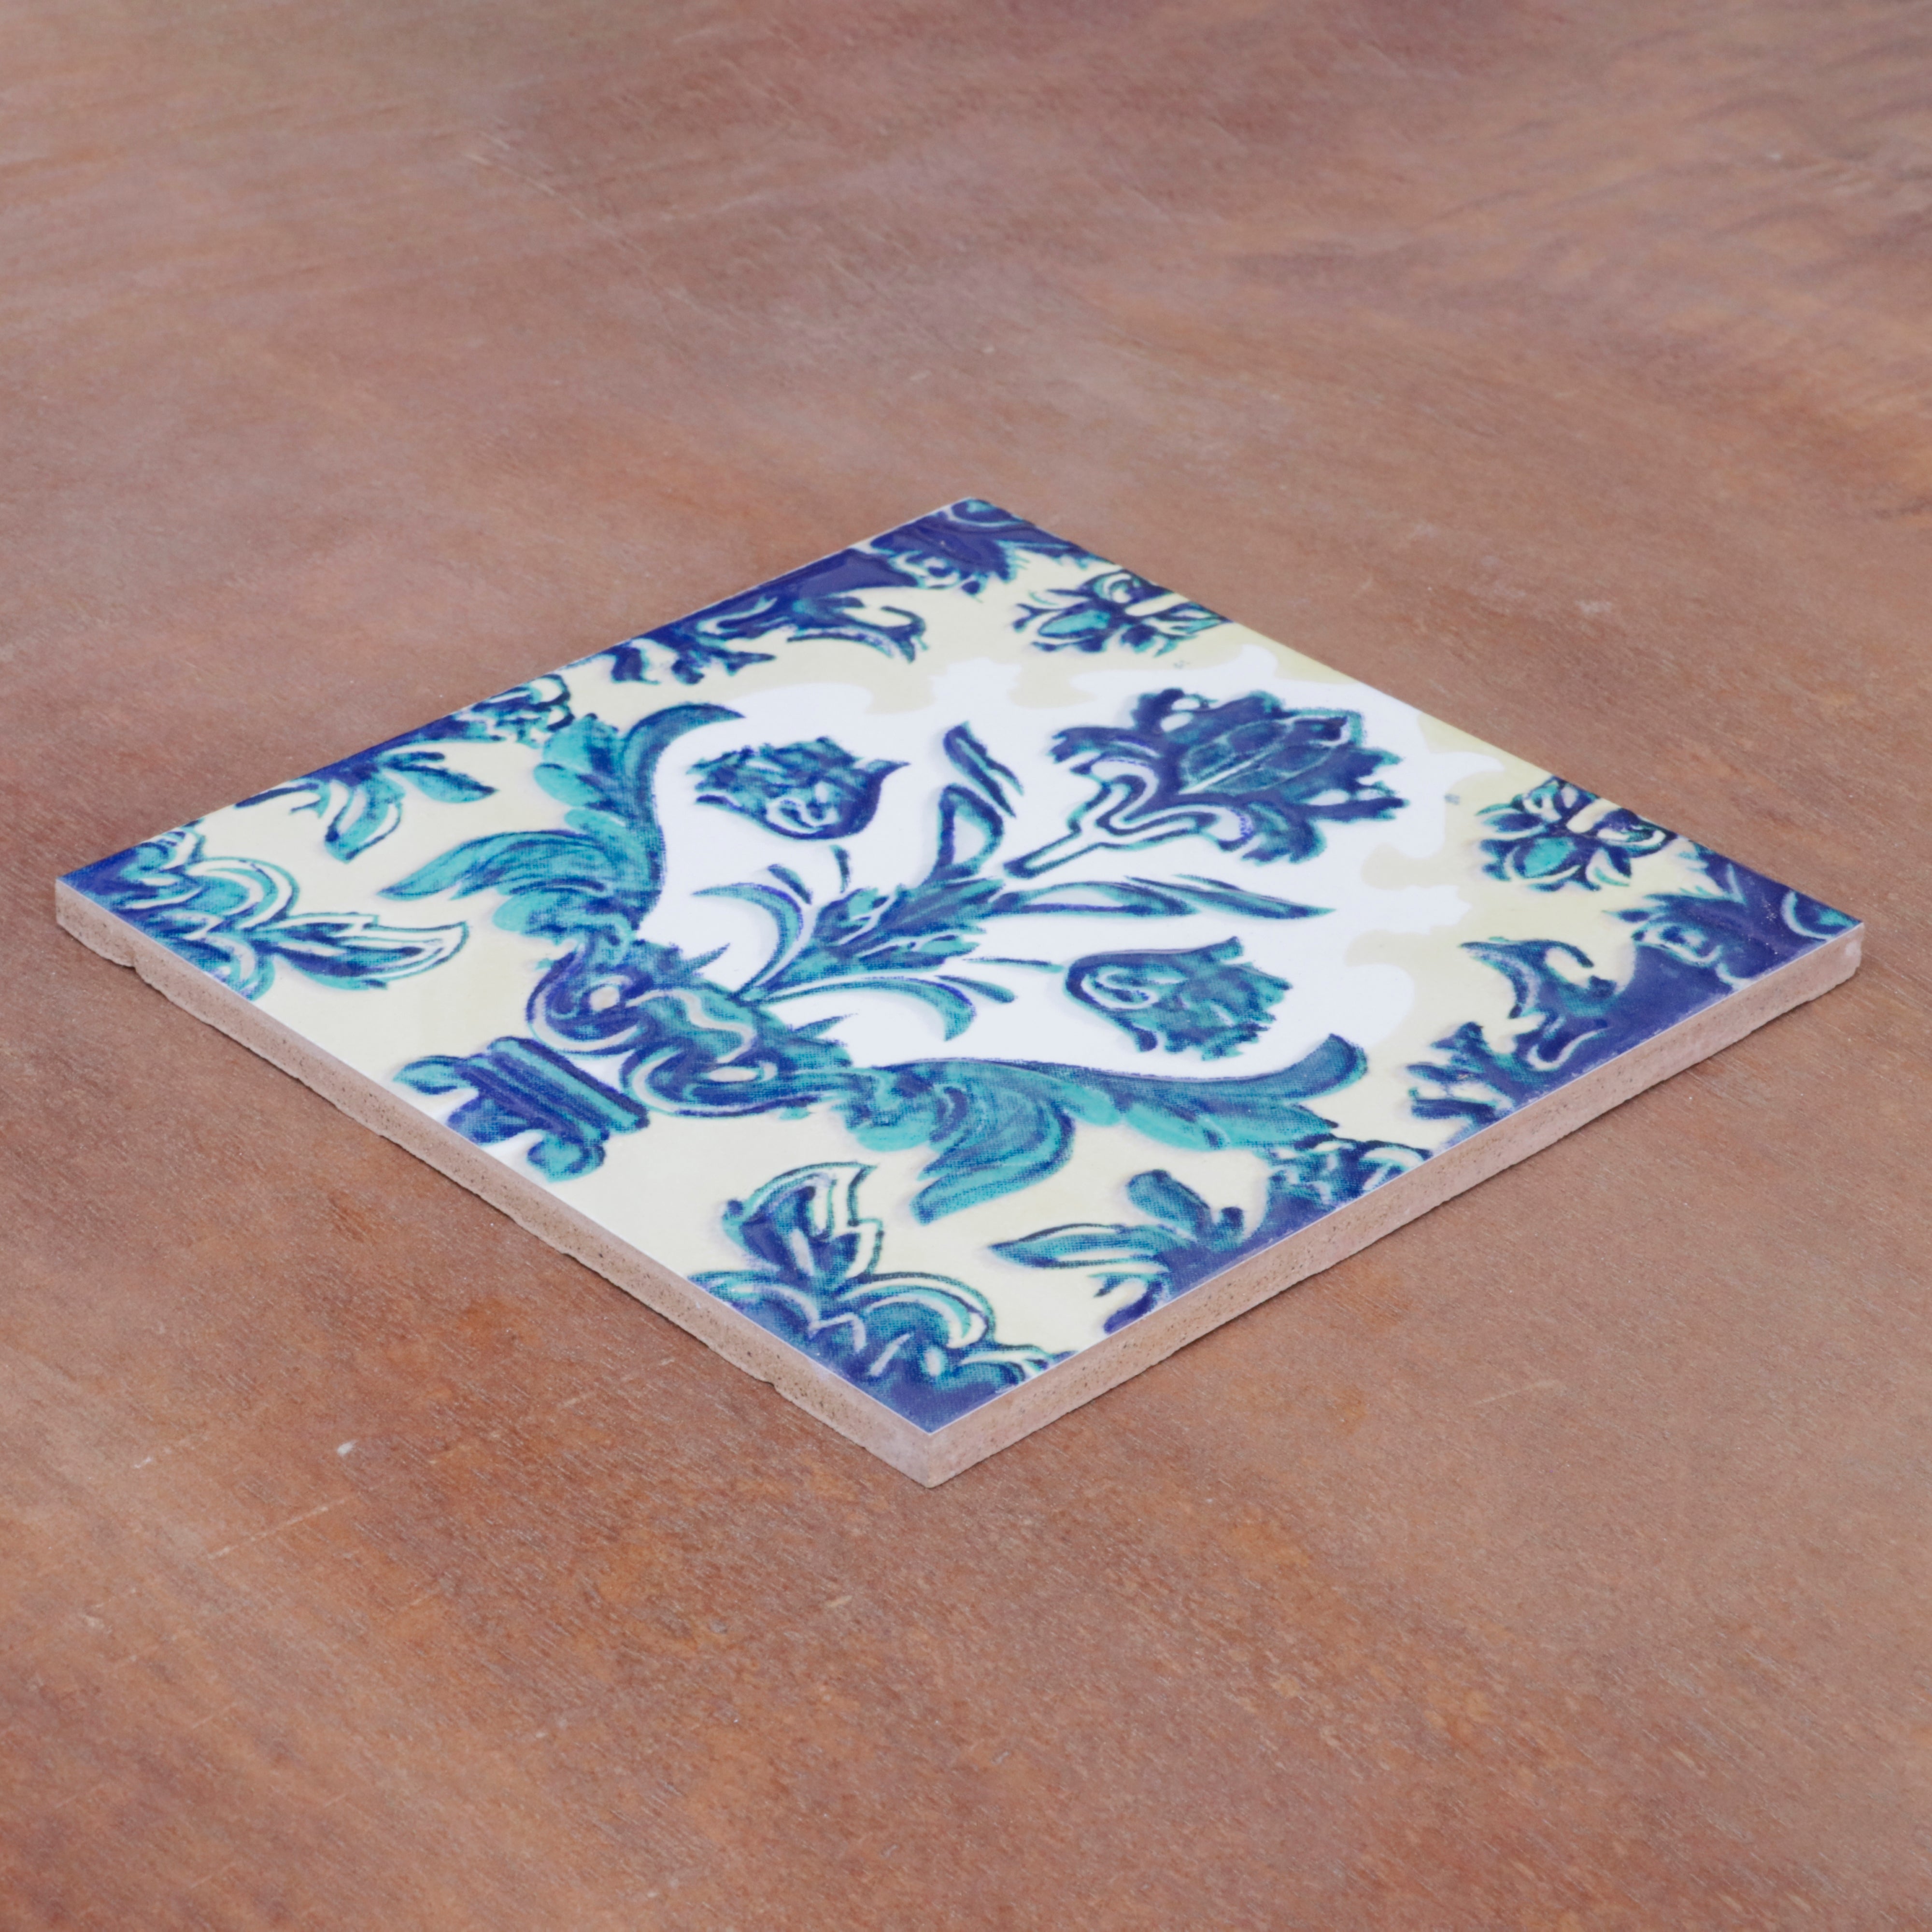 Montage Classic Flowered Designed Ceramic Square Tile Ceramic Tile